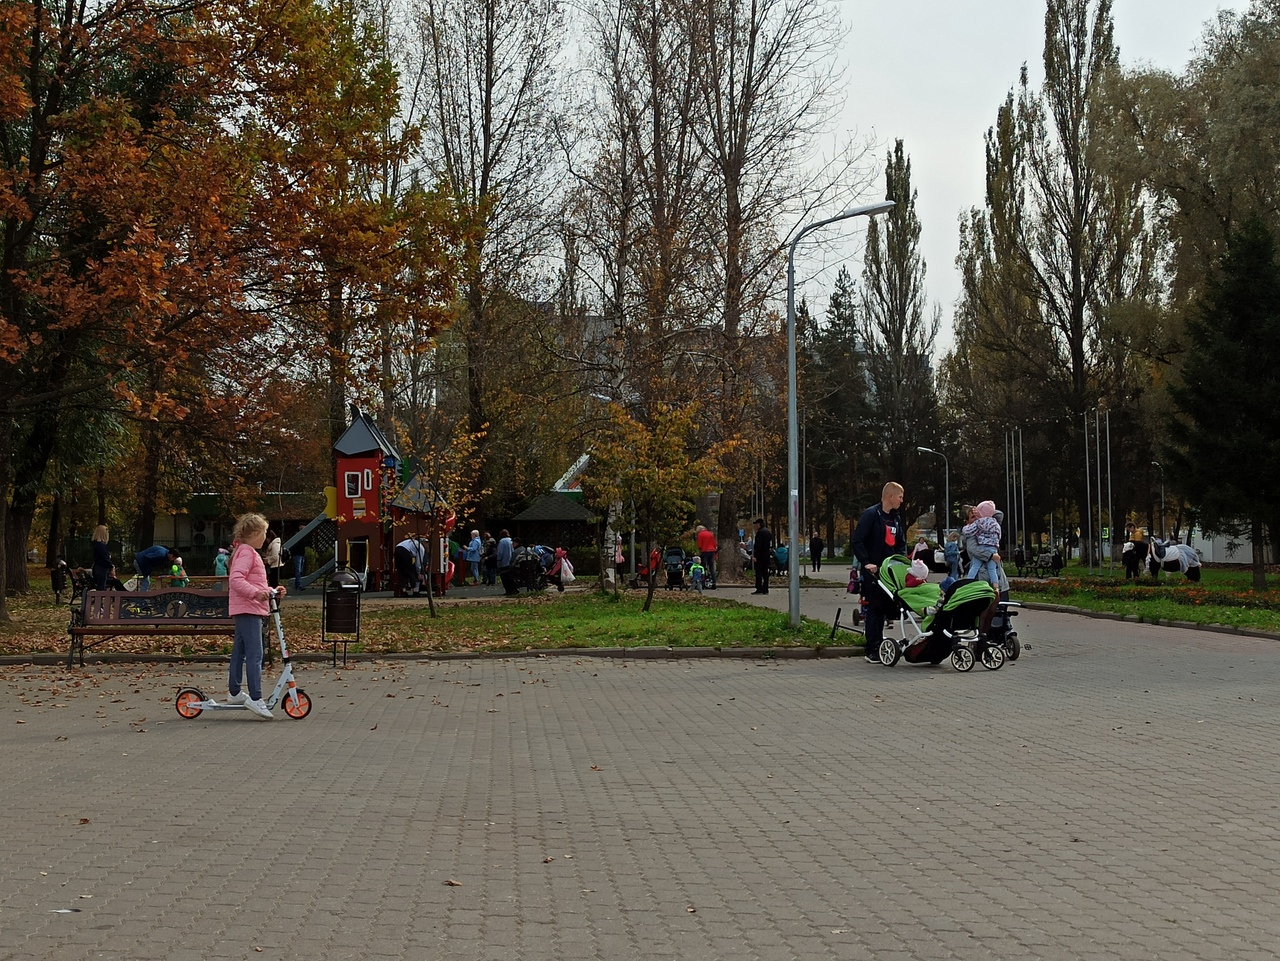 Магазины вместо парков: главный архитектор Ярославля предлагает уменьшить зоны отдыха